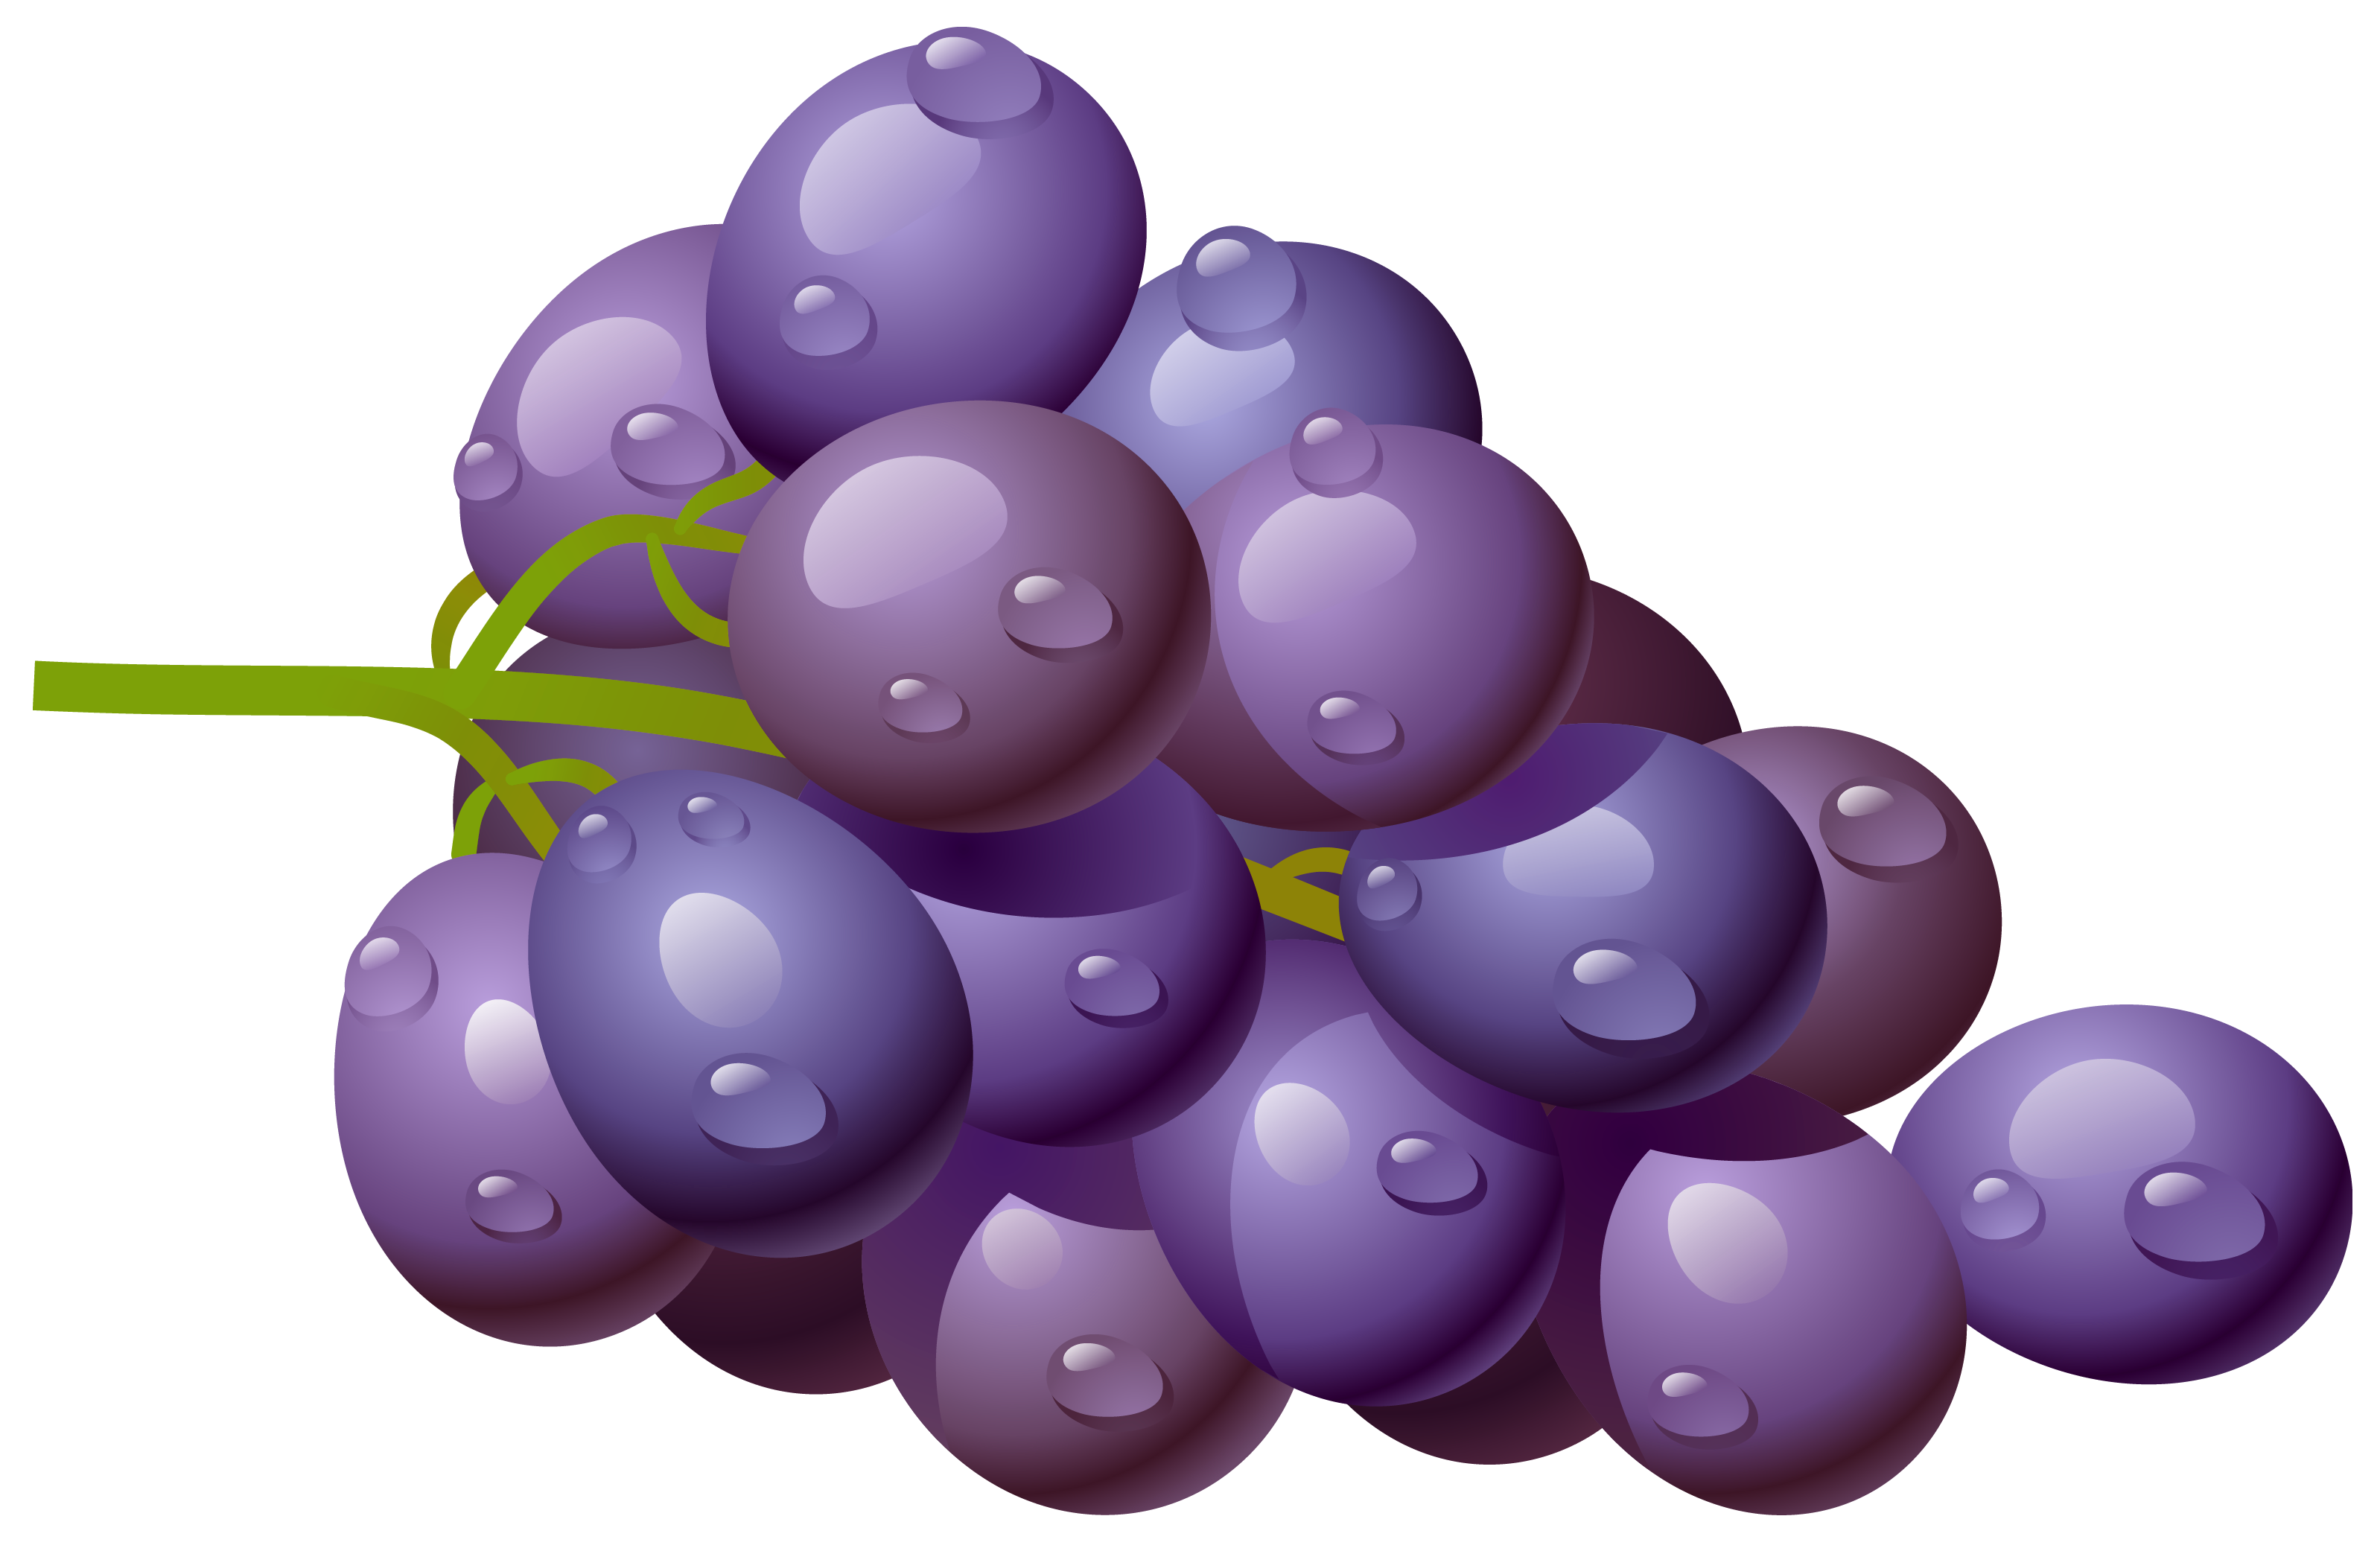 Grapes clip art at vector clip .